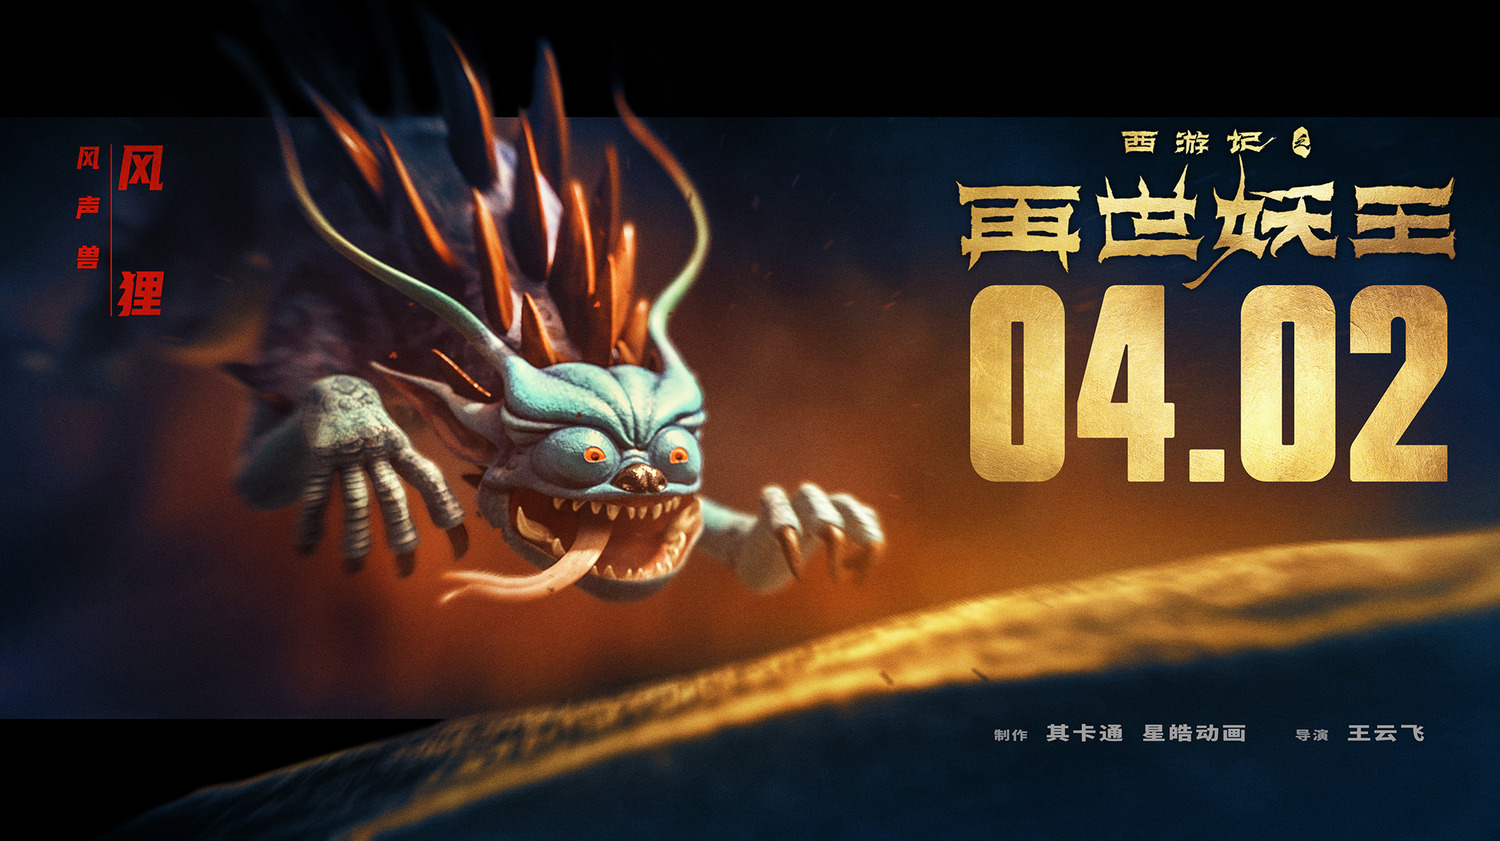 Extra Large Movie Poster Image for Xi You Ji Zhi Zai Shi Yao Wang (#19 of 21)